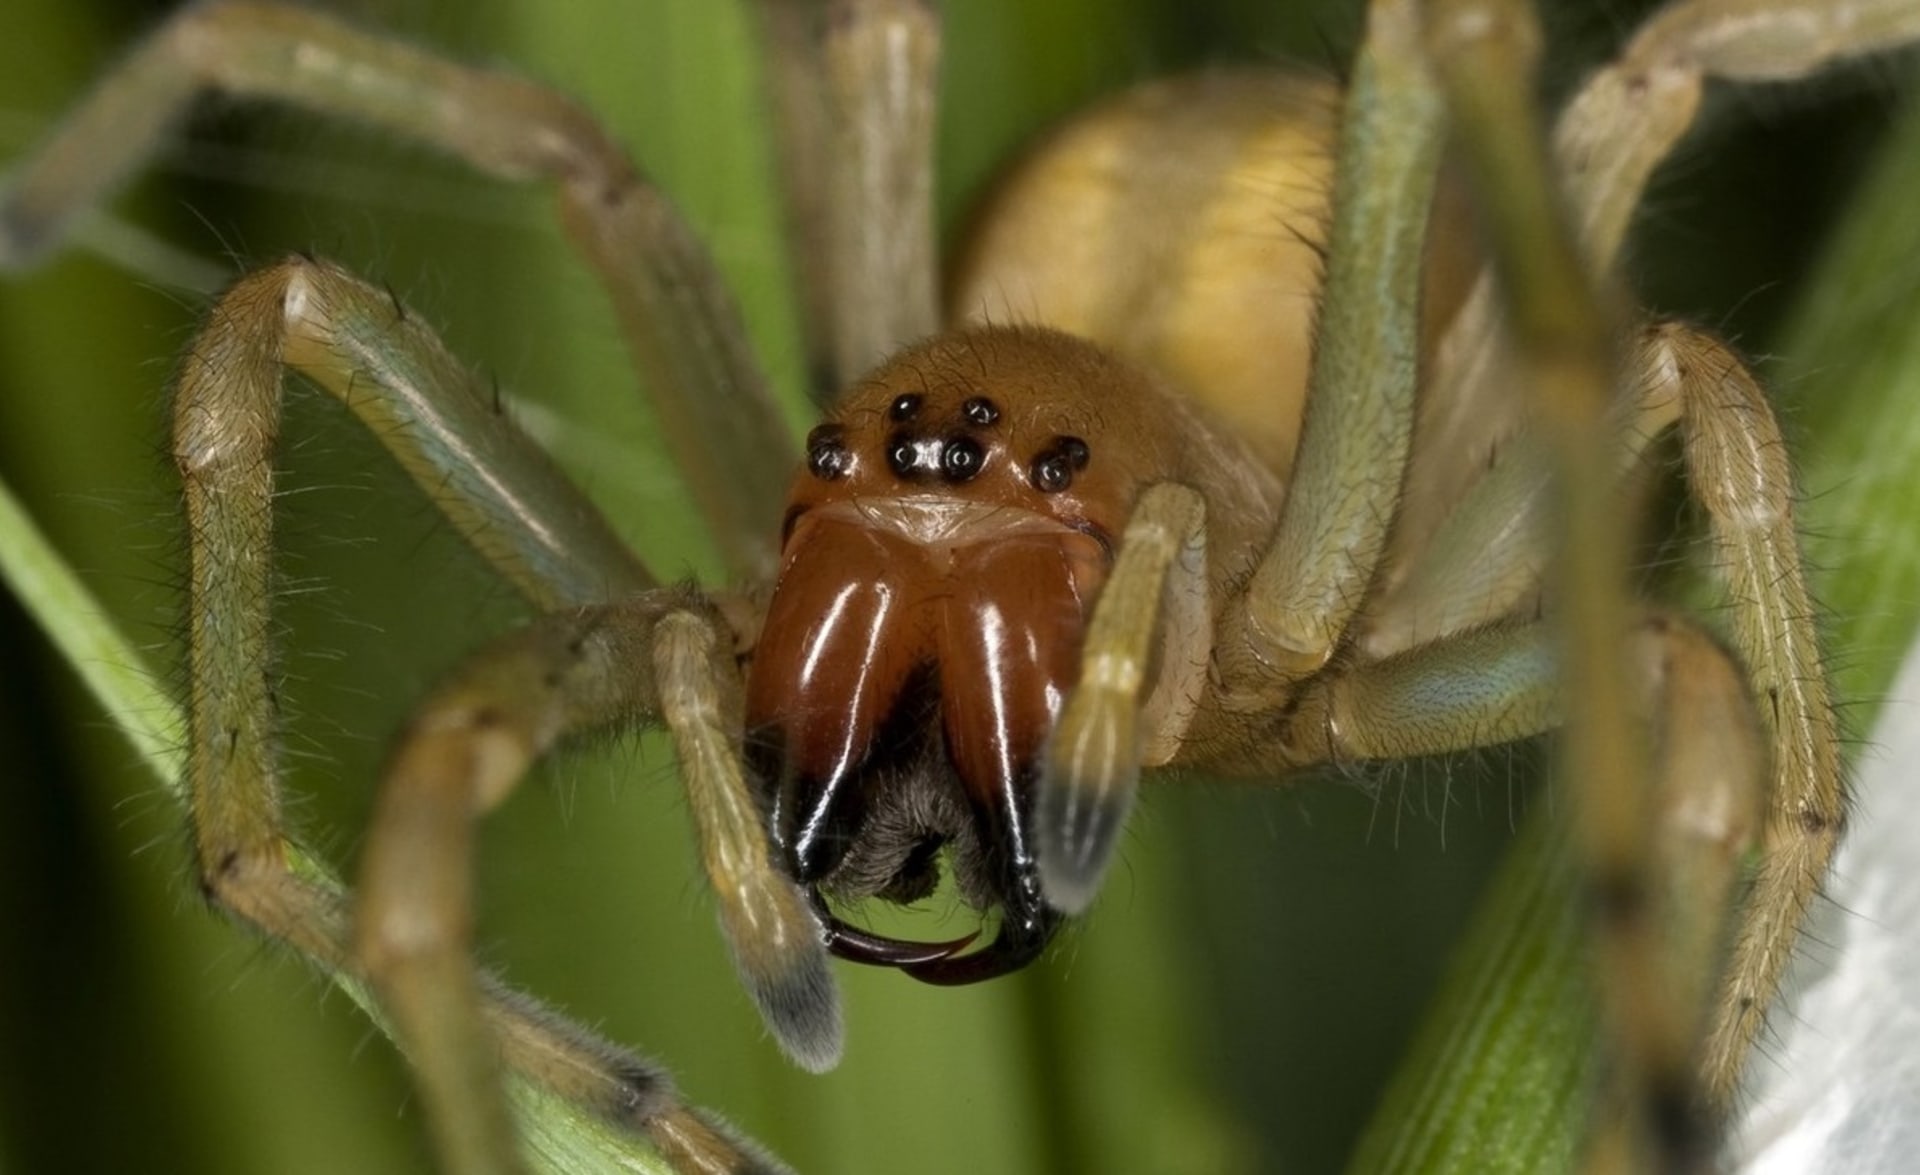 Kousnutí od tohoto pavouka může být opravdu hodně bolestivé.